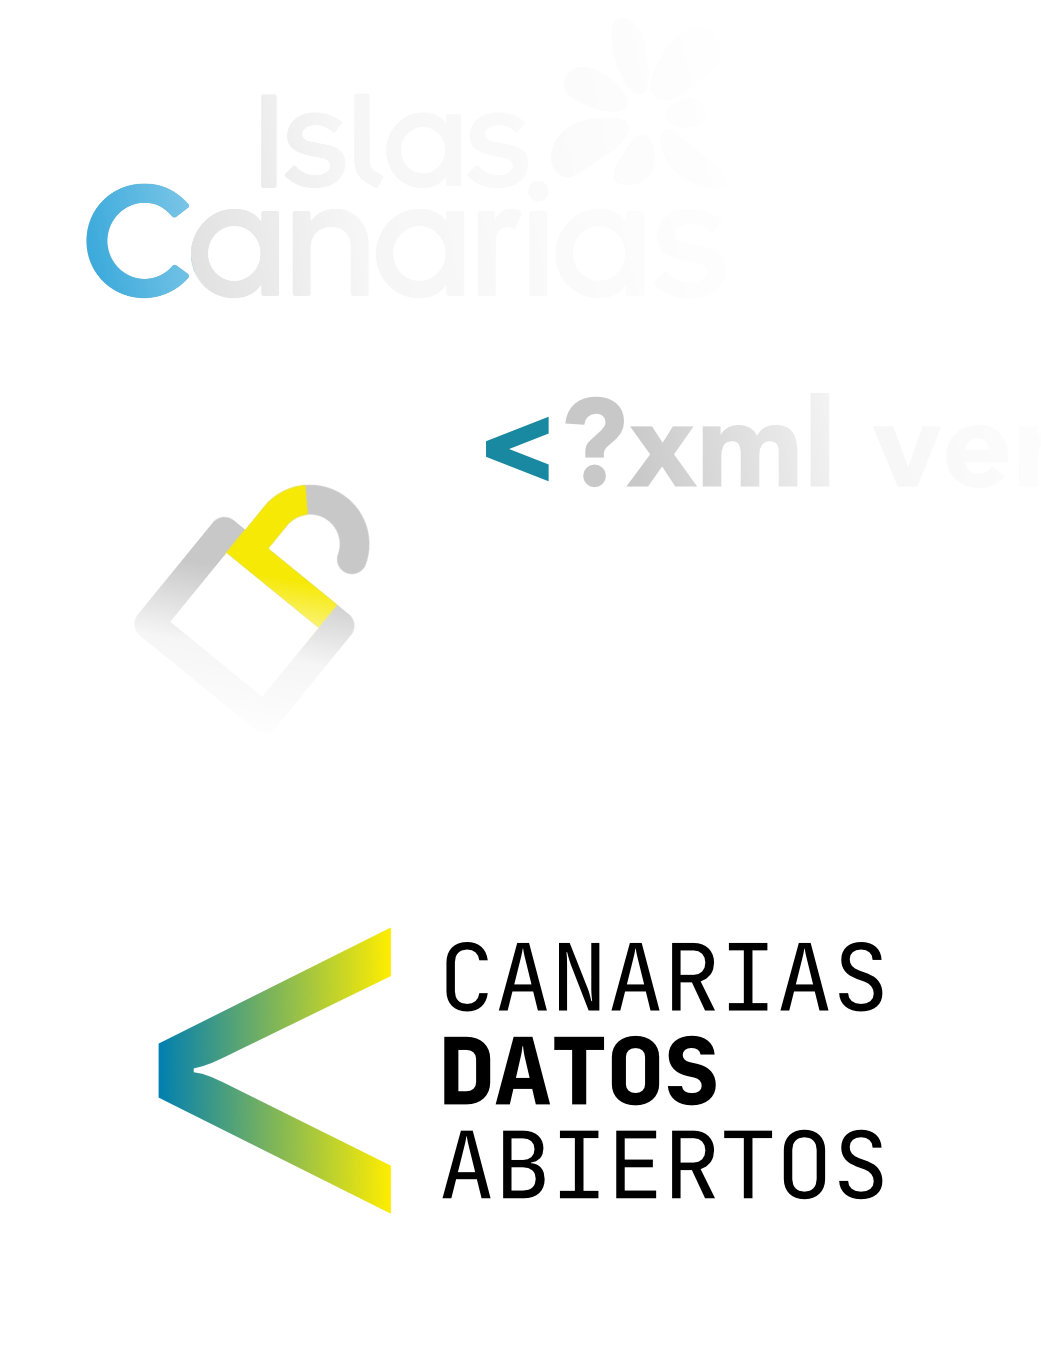 Canarias Datos Abiertos - Origen del logo